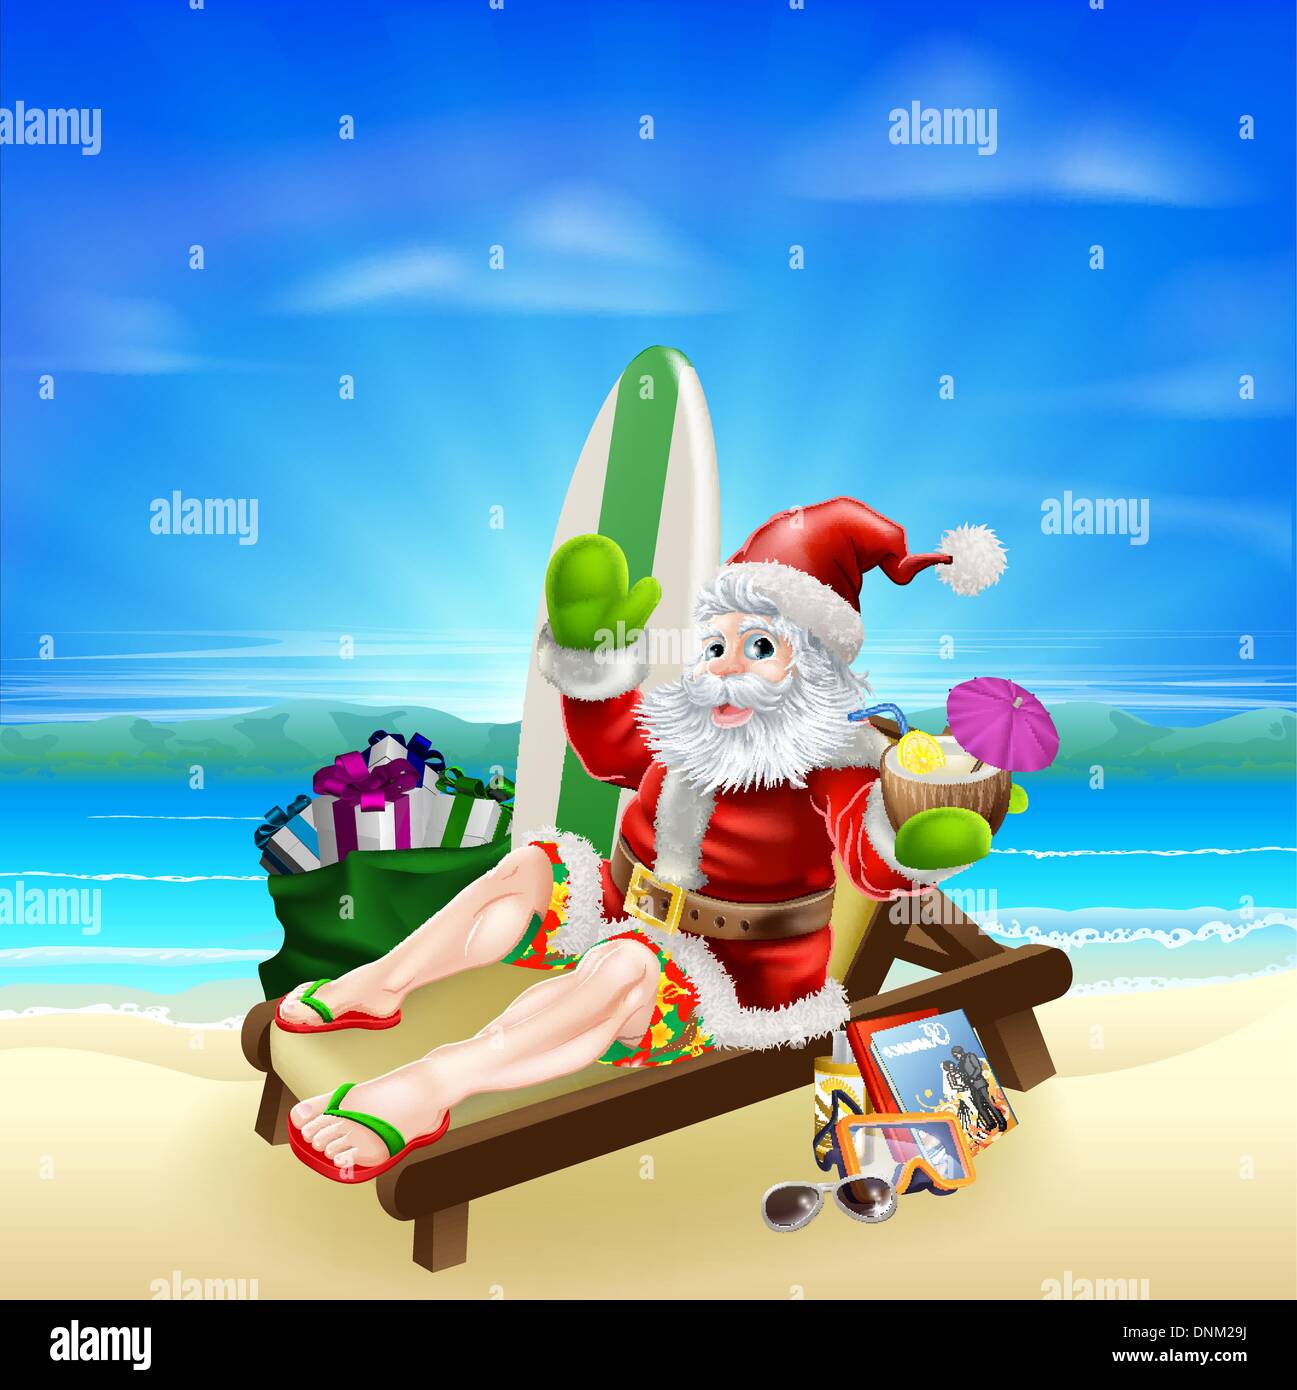 Noël Santa illustration. Santa se détendre dans sur la plage avec une planche de surf, des sacs cadeaux et autres articles des ans une tropi Illustration de Vecteur